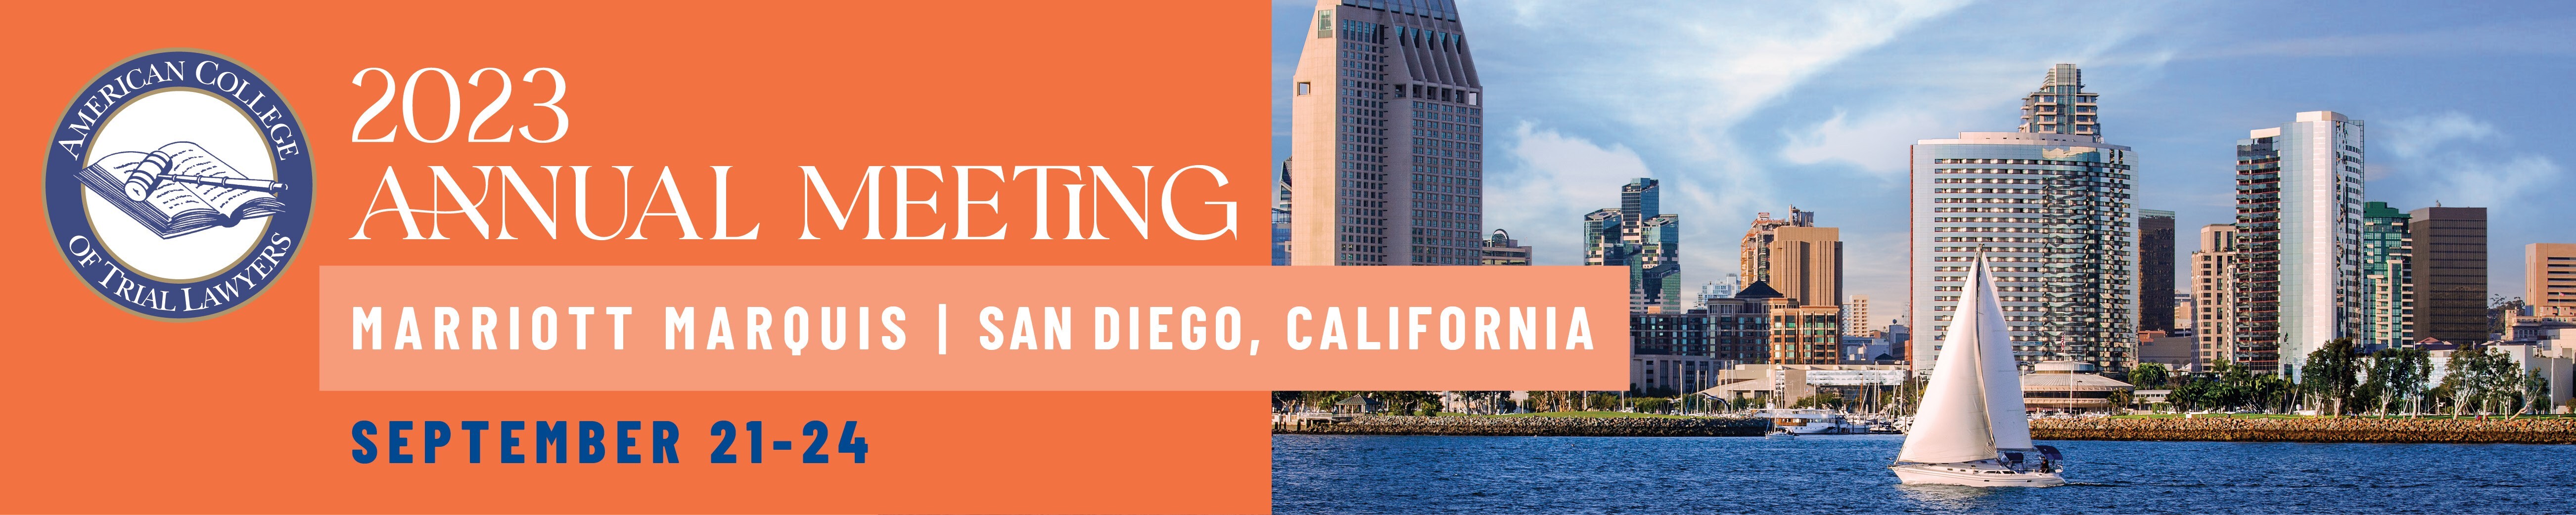 2023 Annual Meeting: San Diego